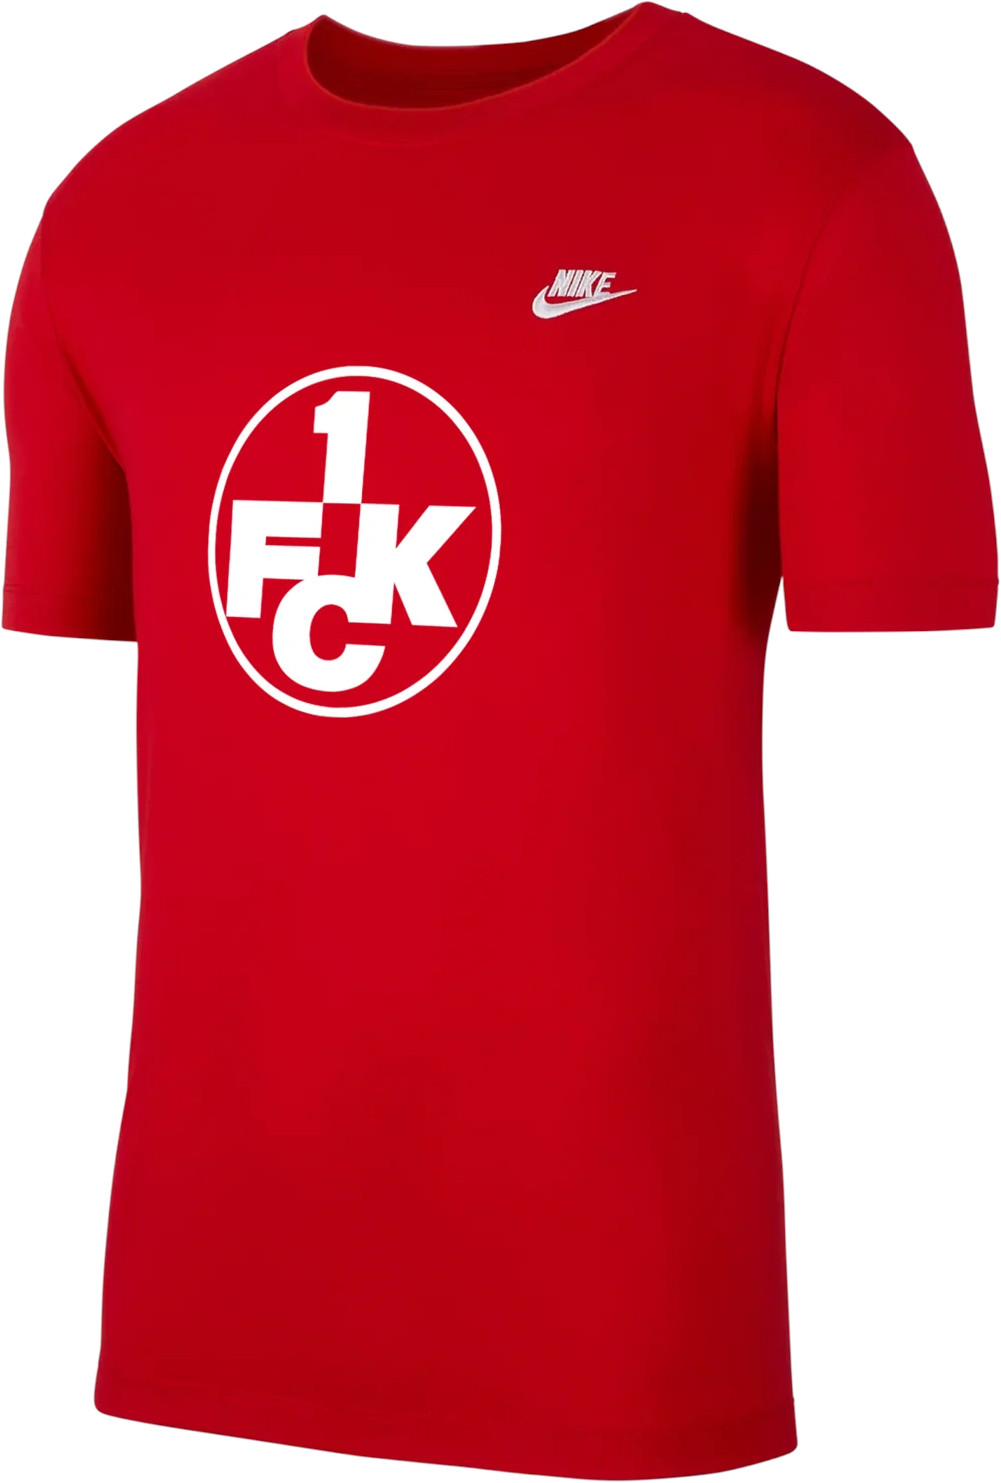 podkoszulek Nike 1.FC Kaiserslautern Club Tee